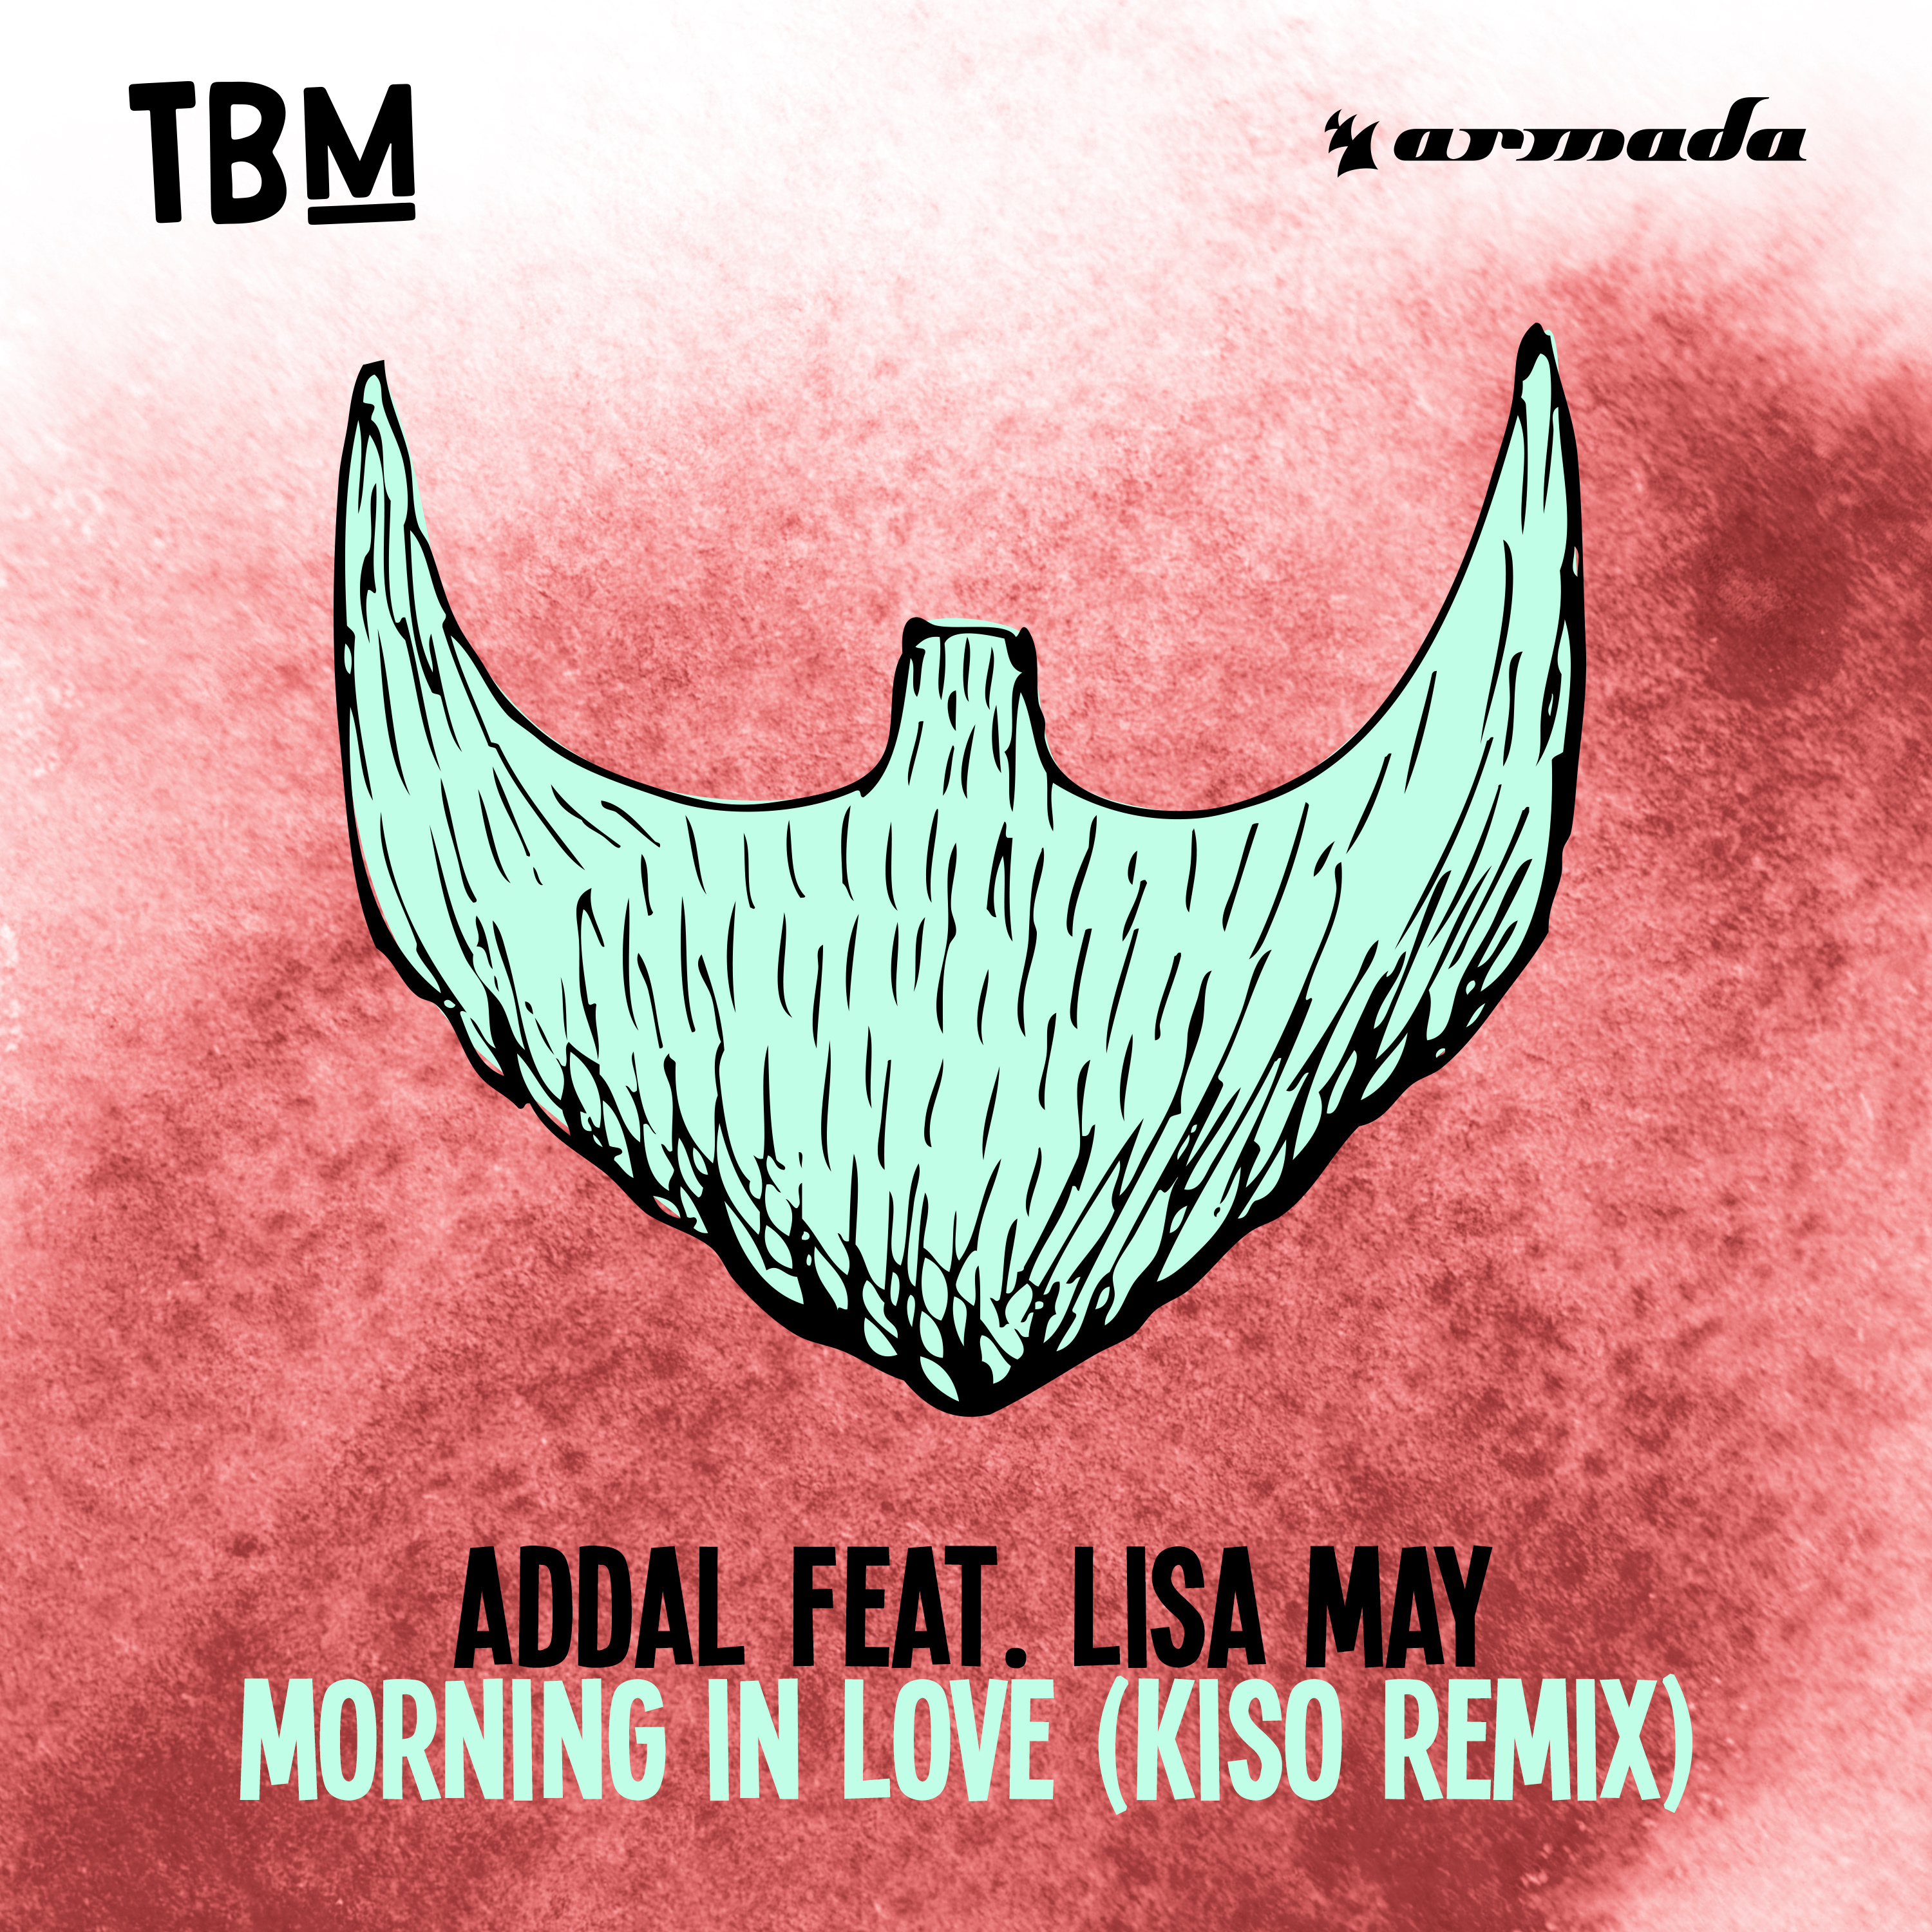 Morning In Love (Kiso Remix)